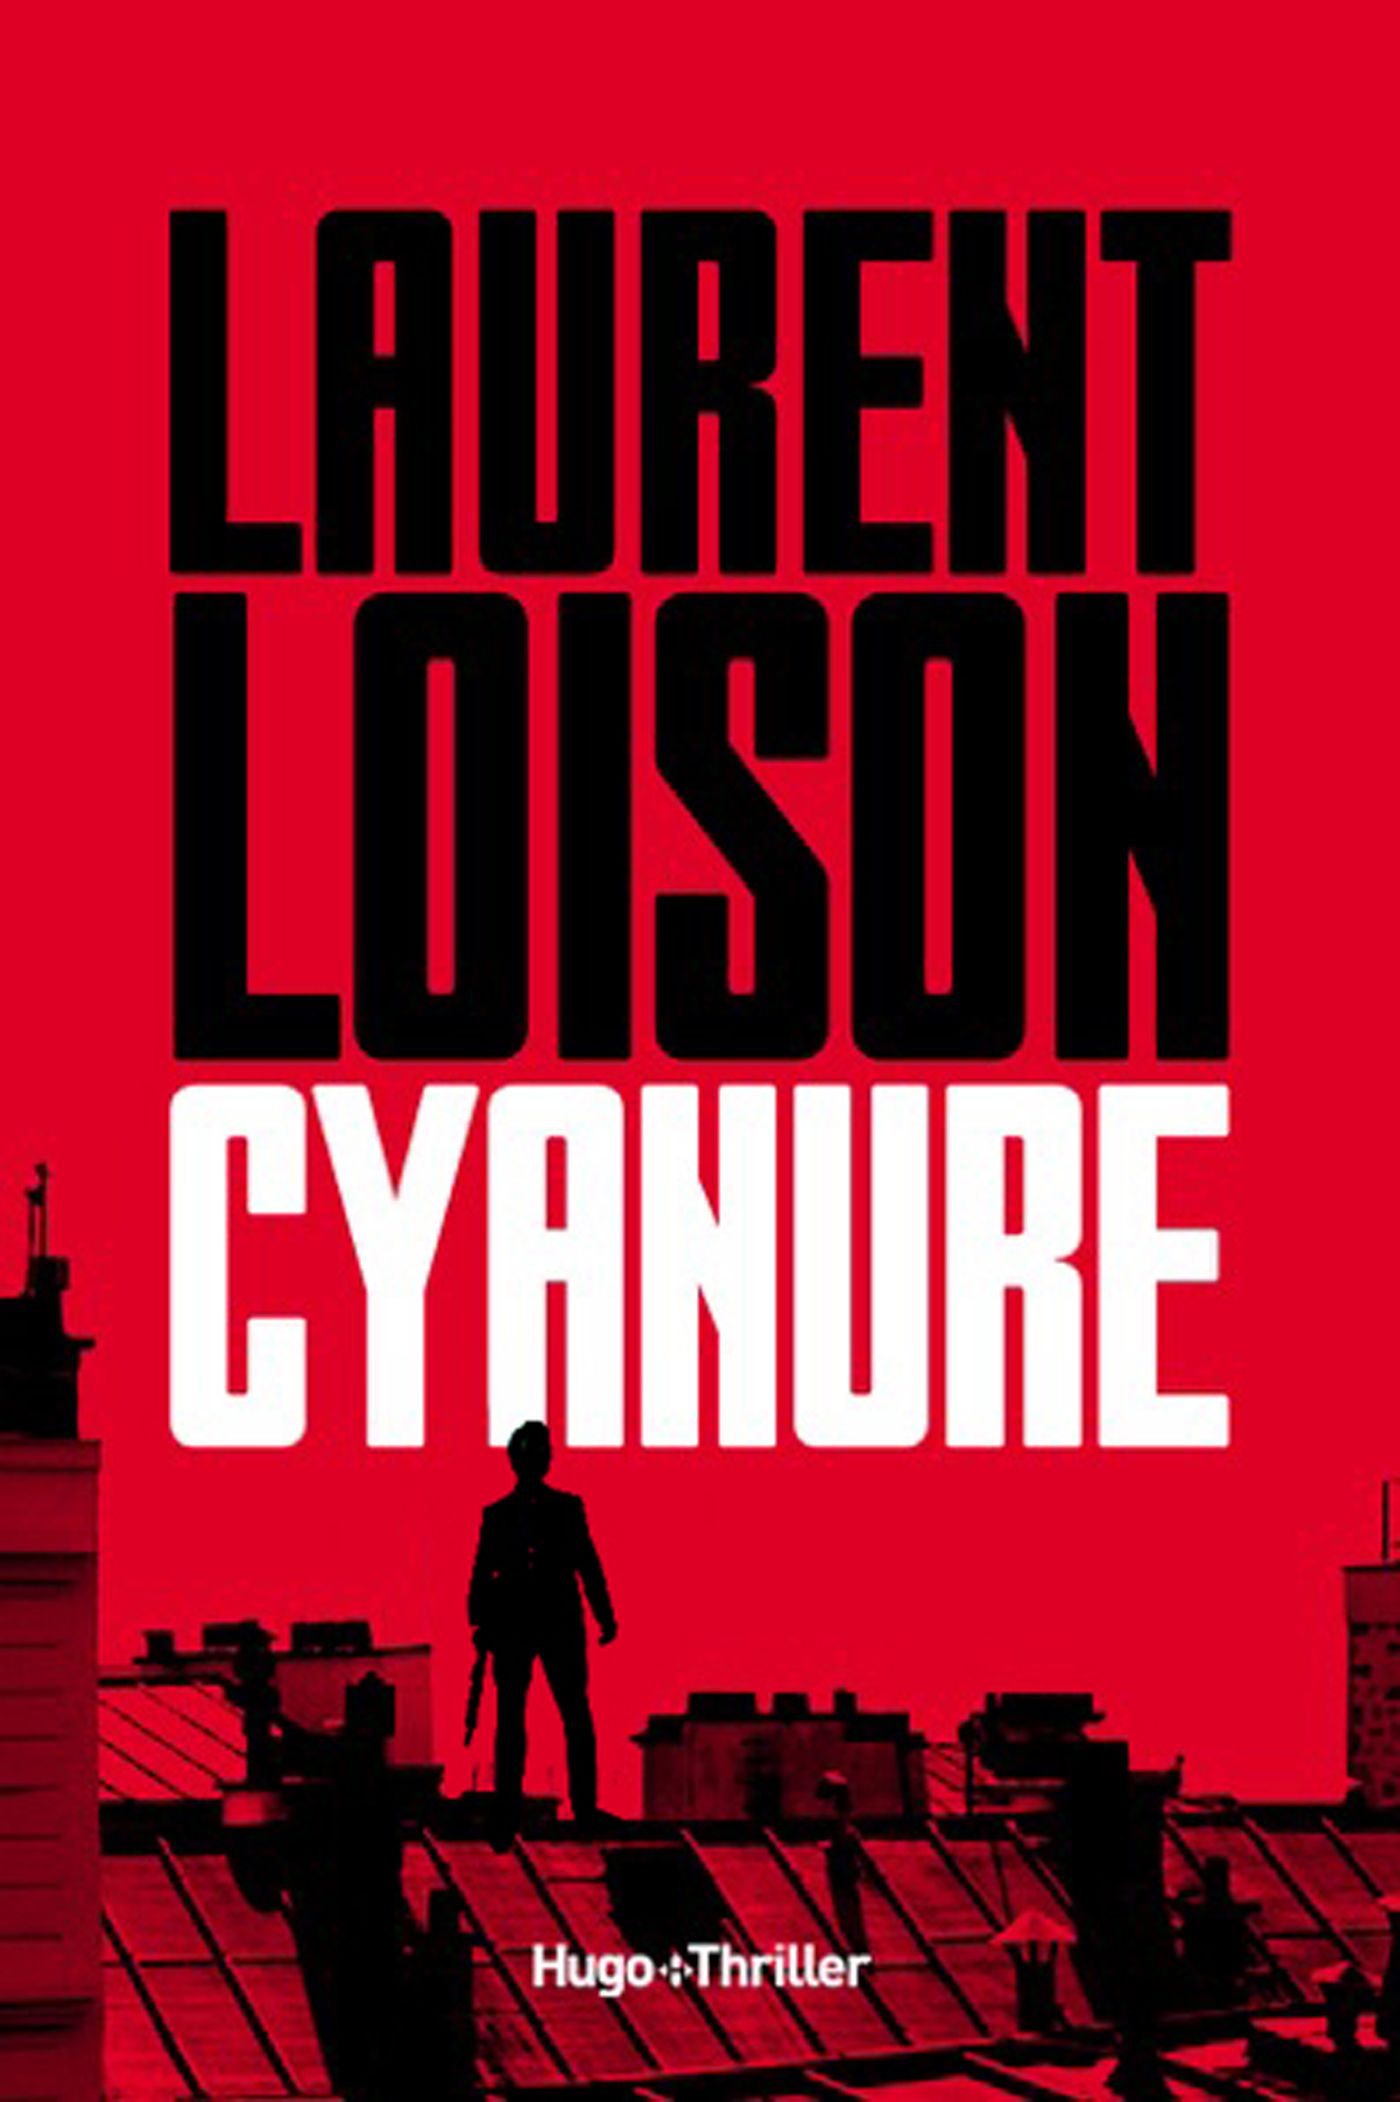 La couverture de Cyanure, un livre de Laurent Loison